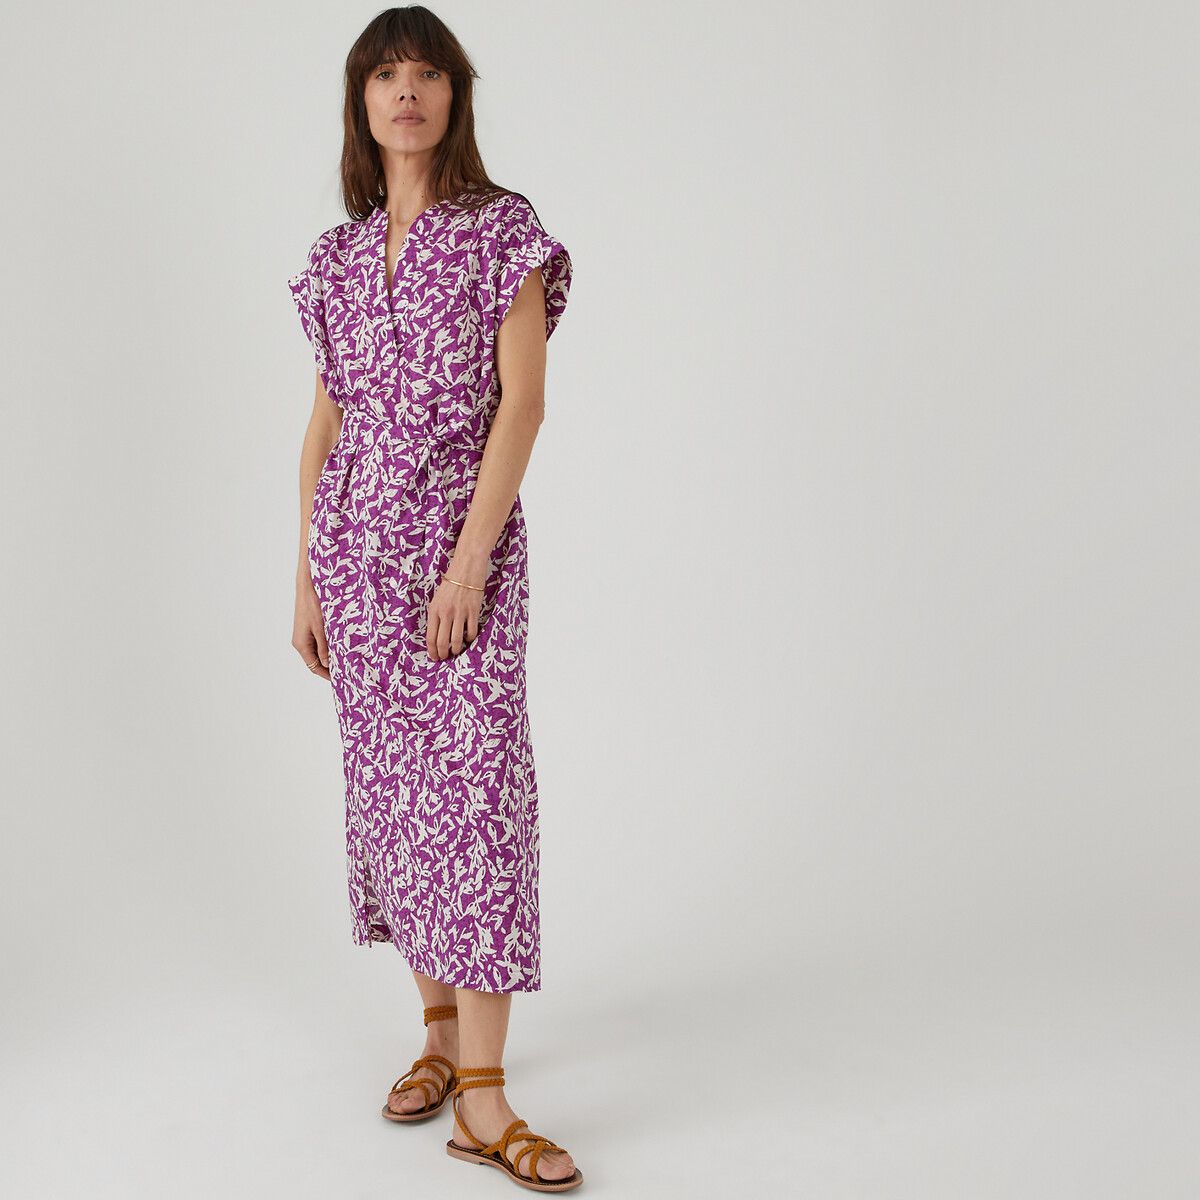 Платье длинное с воротником-стойкой из хлопка с цветочным принтом S фиолетовый